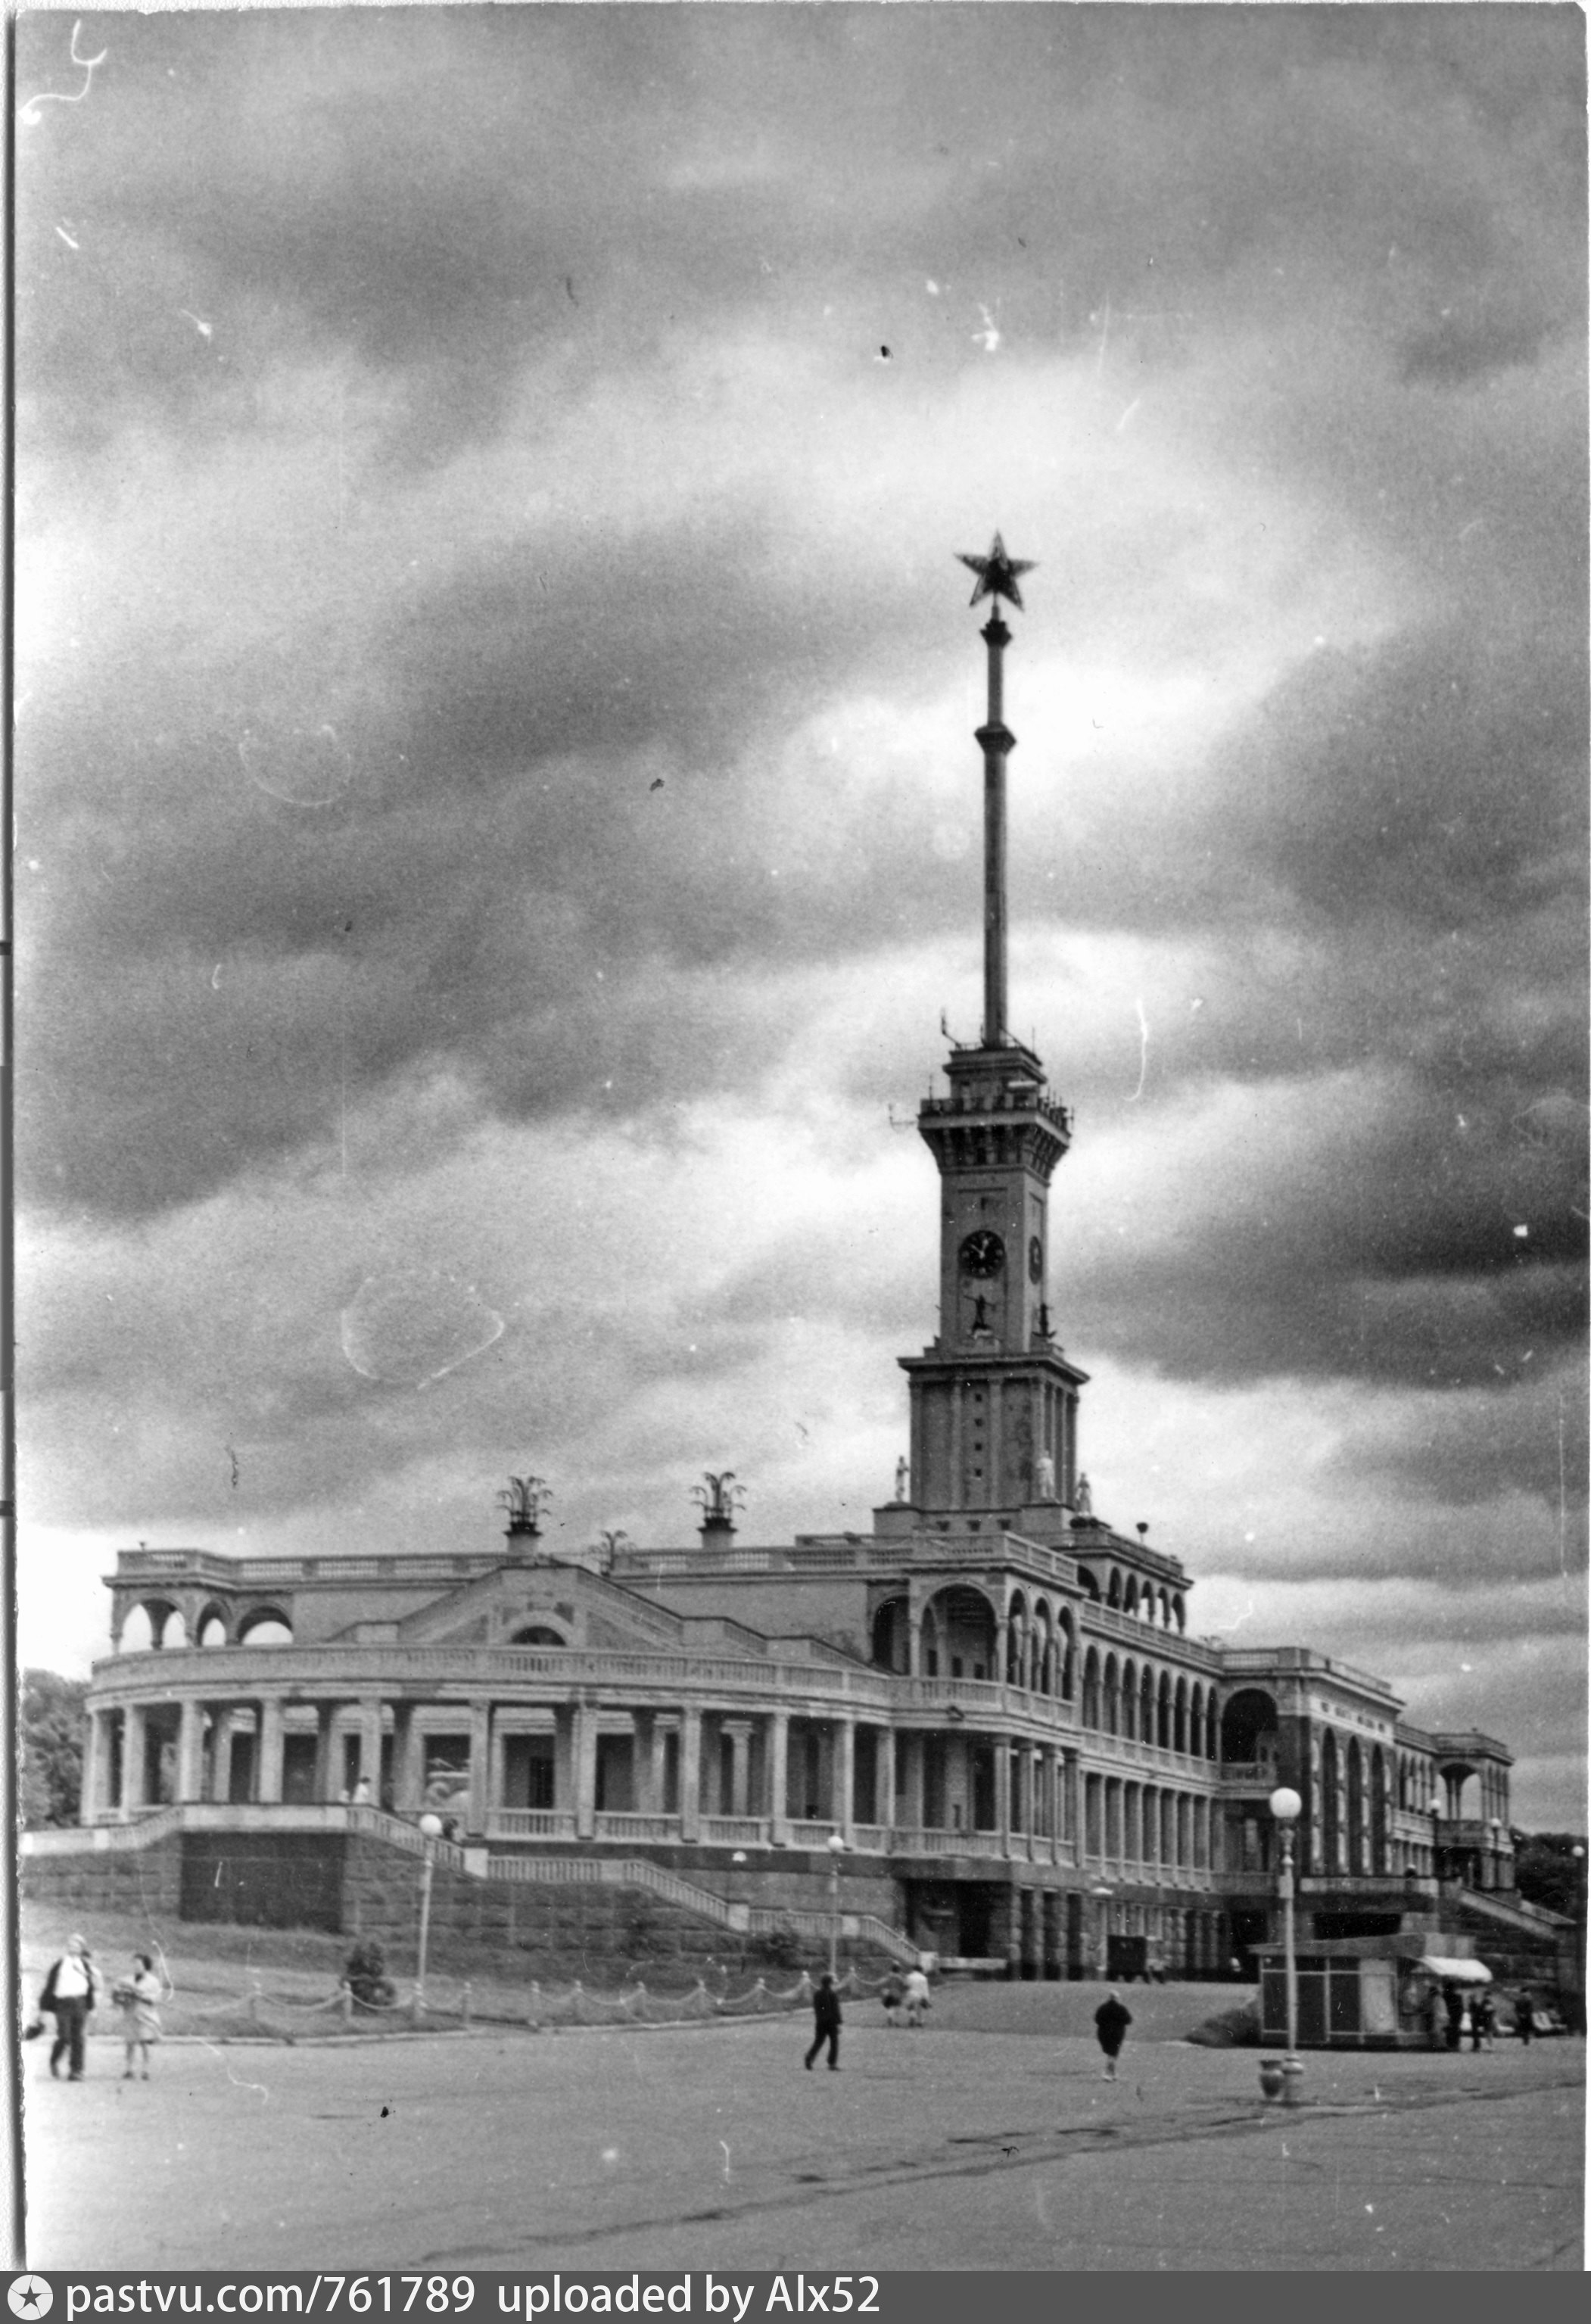 фото речного вокзала в москве старые